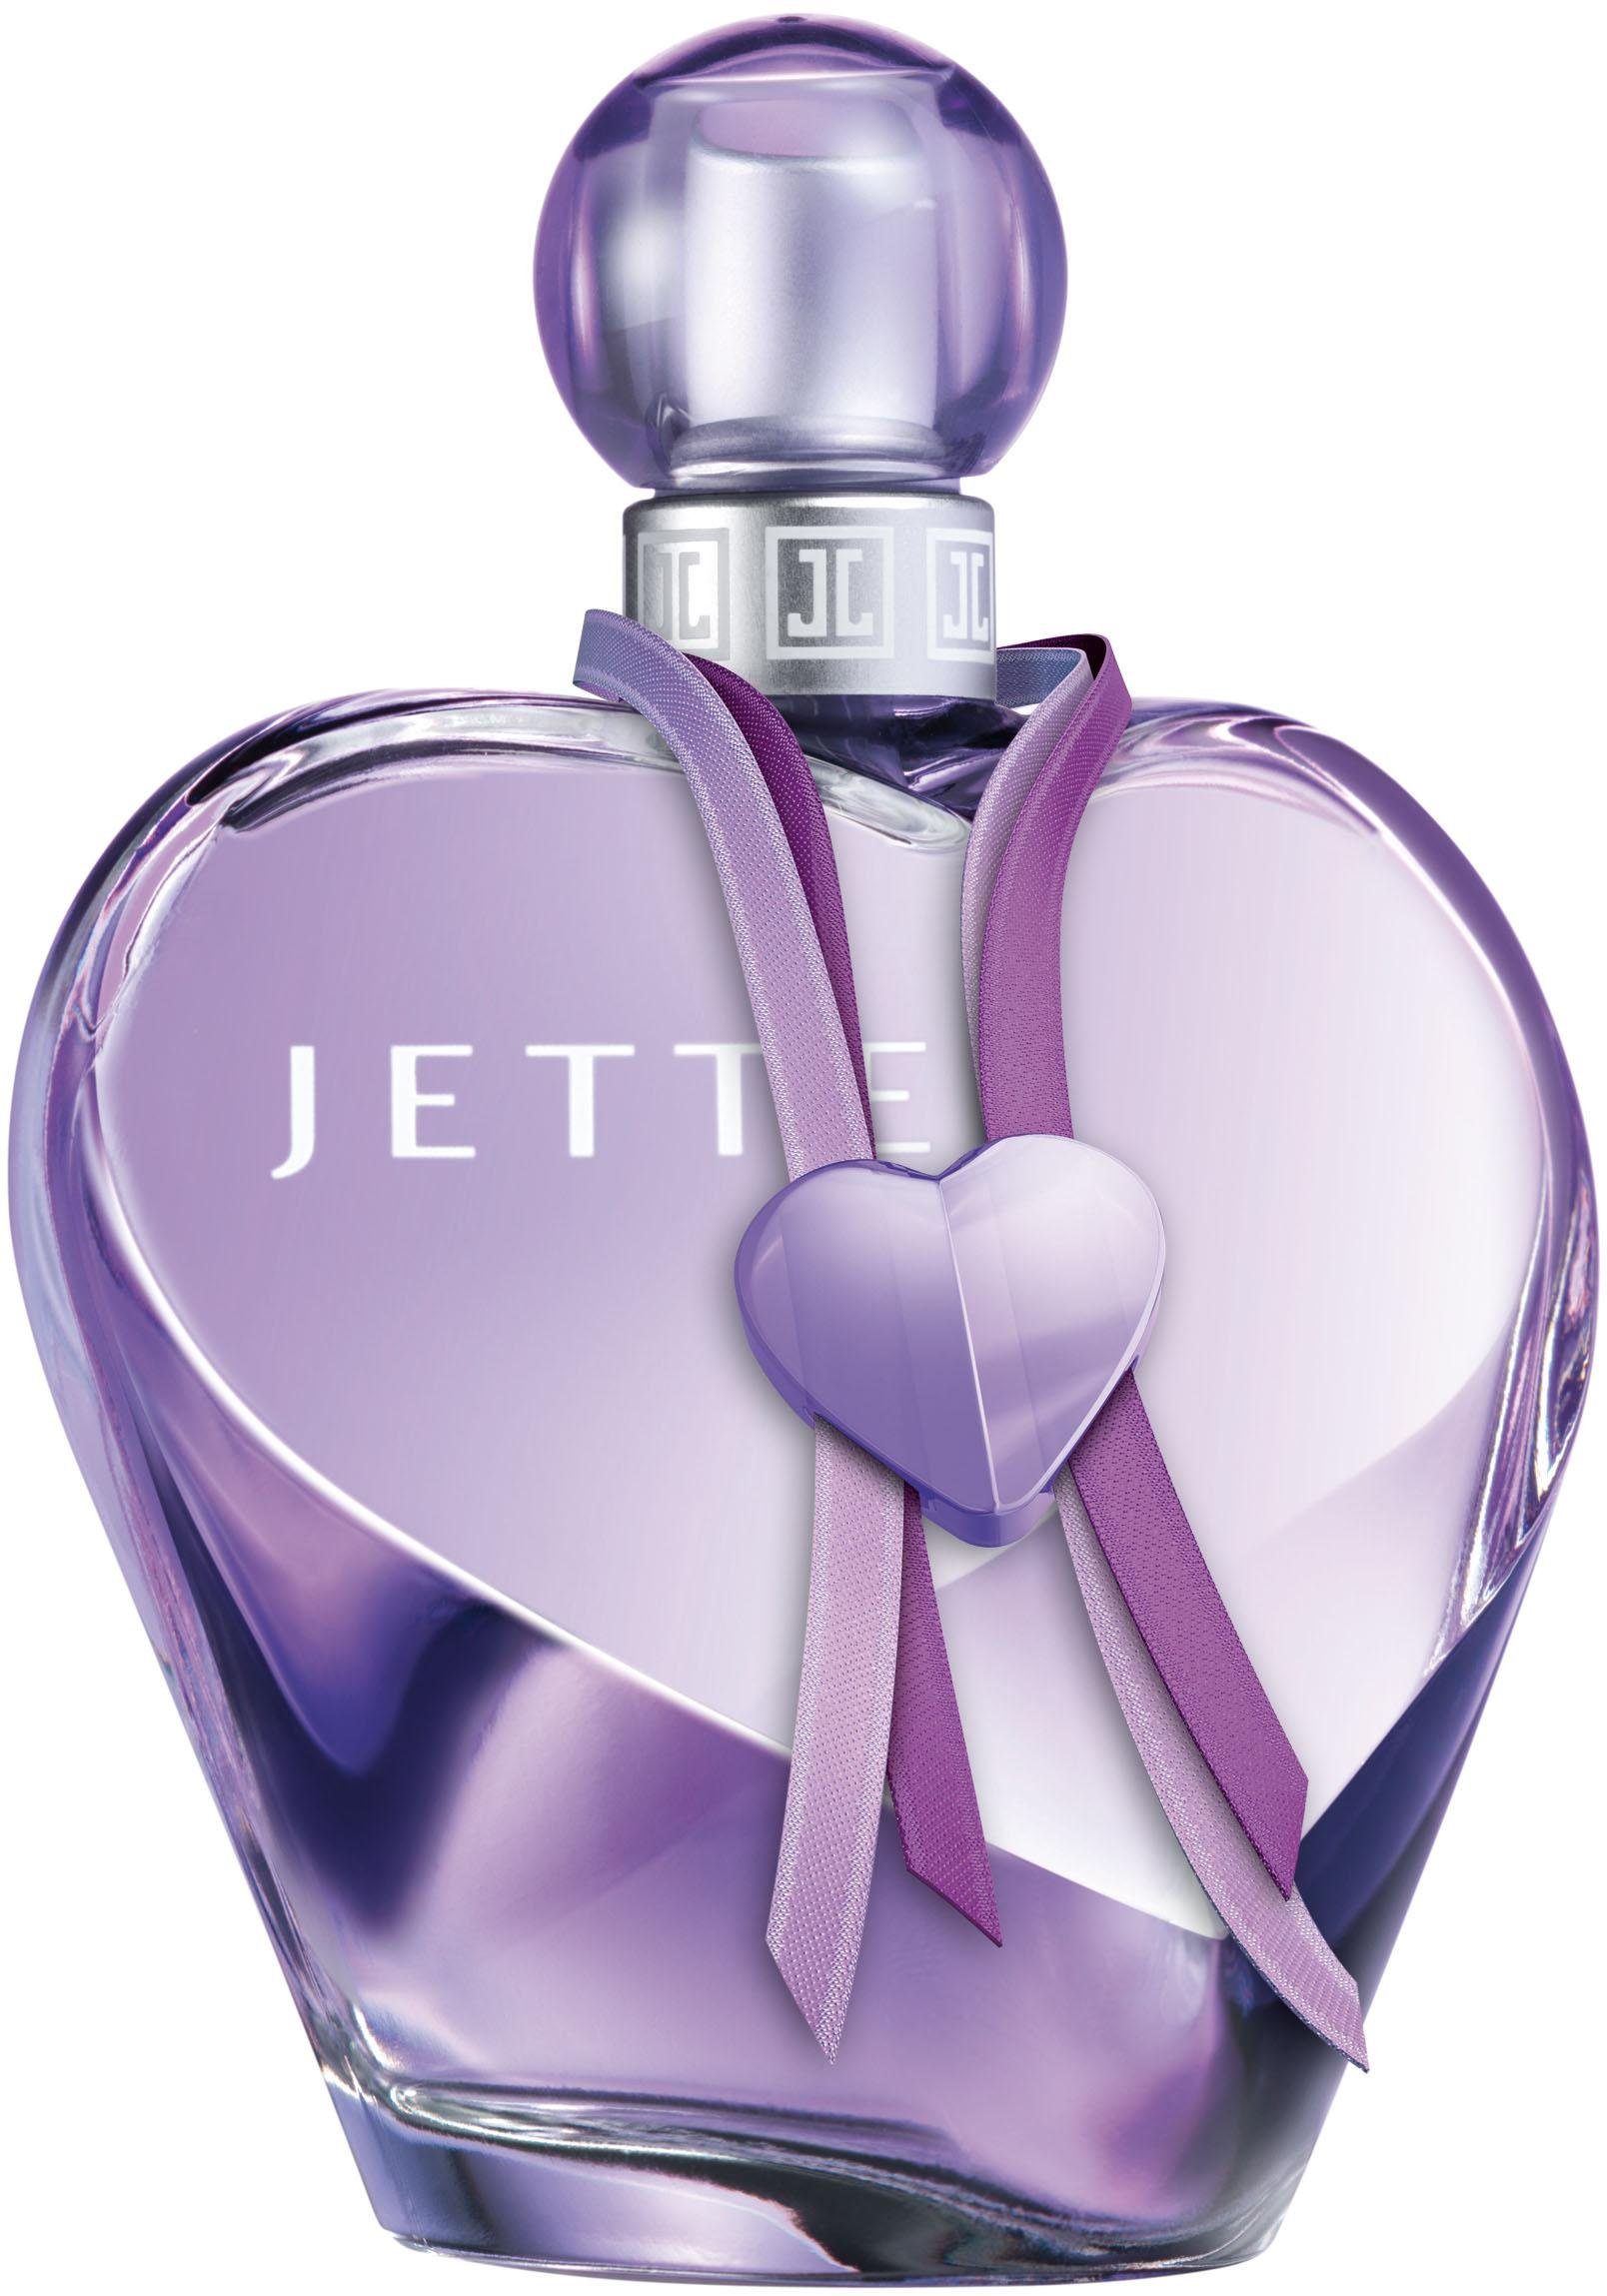 JETTE Eau de Parfum »Love« online kaufen | OTTO